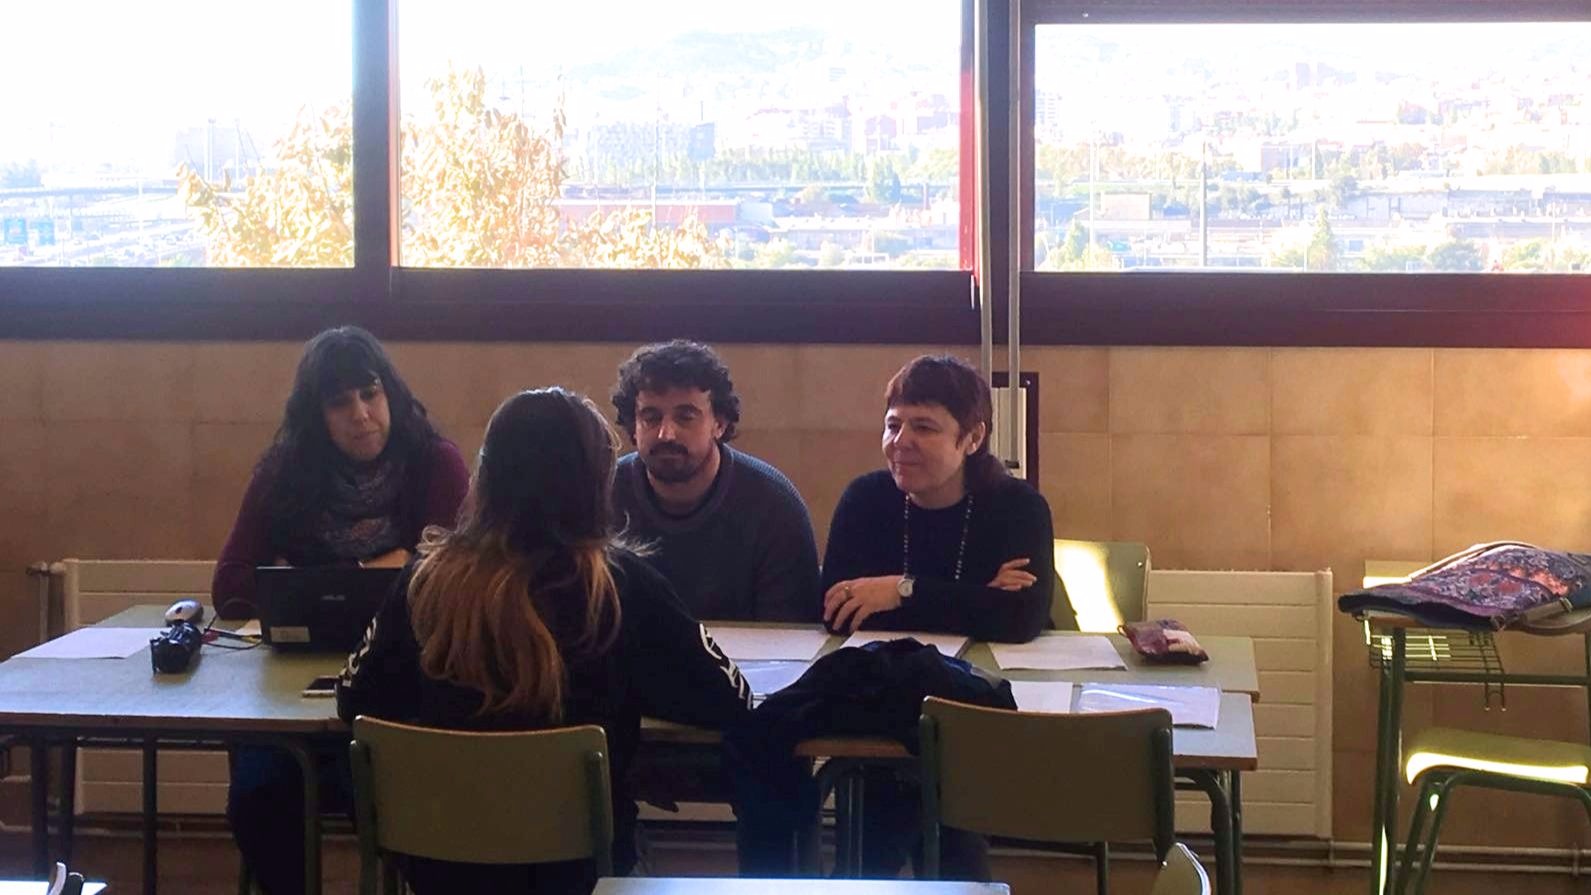 More than 100 students of FP attend the Erasmus + VET internships in Santa Coloma de Gramenet